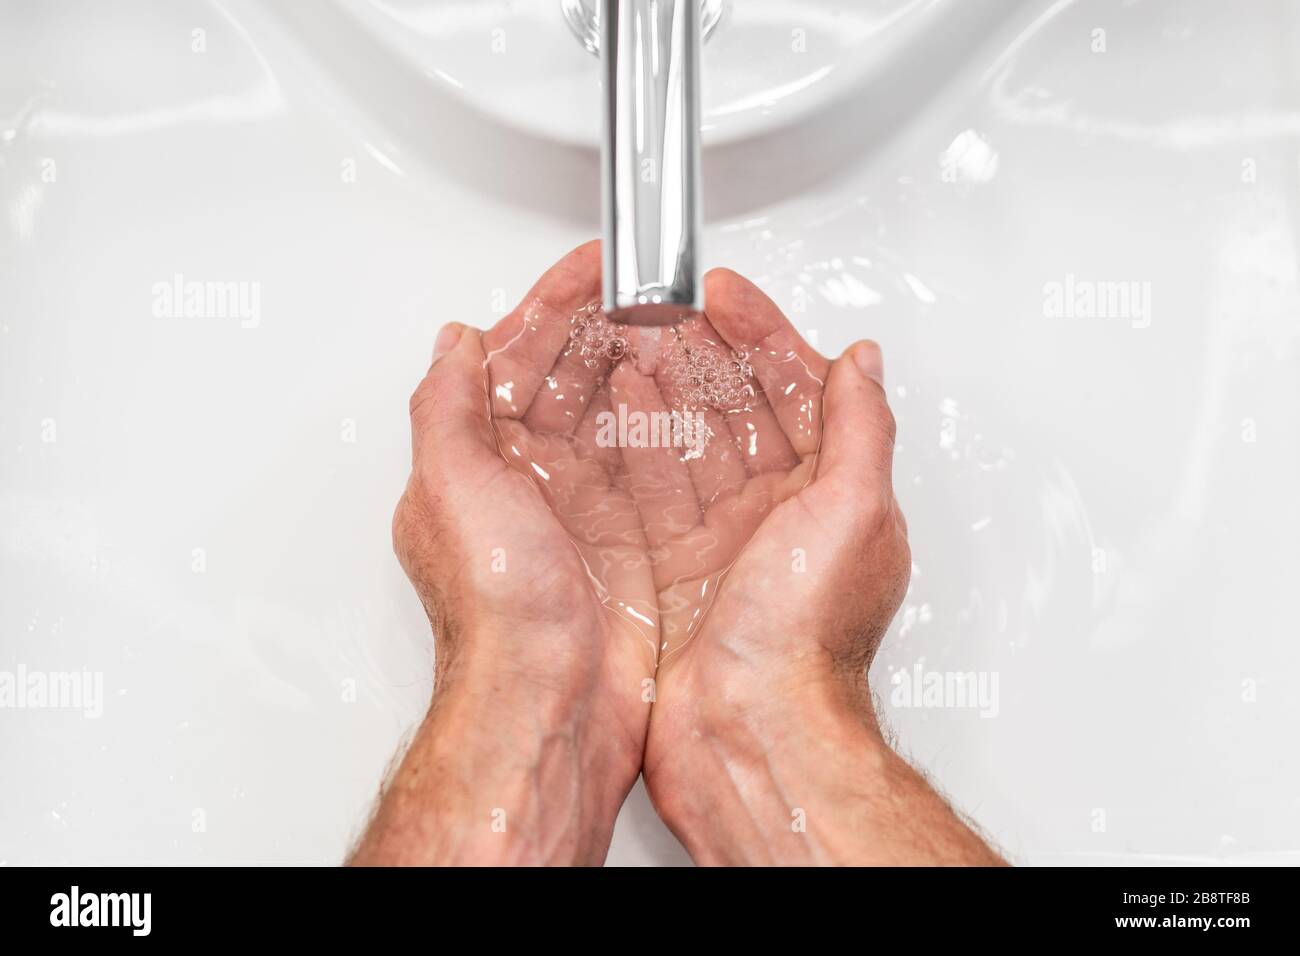 Se laver les mains avec du savon hygiène des mains pour prévenir la propagation du coronavirus corona virus. Vue de dessus des mains masculines frottant sous l'eau Banque D'Images